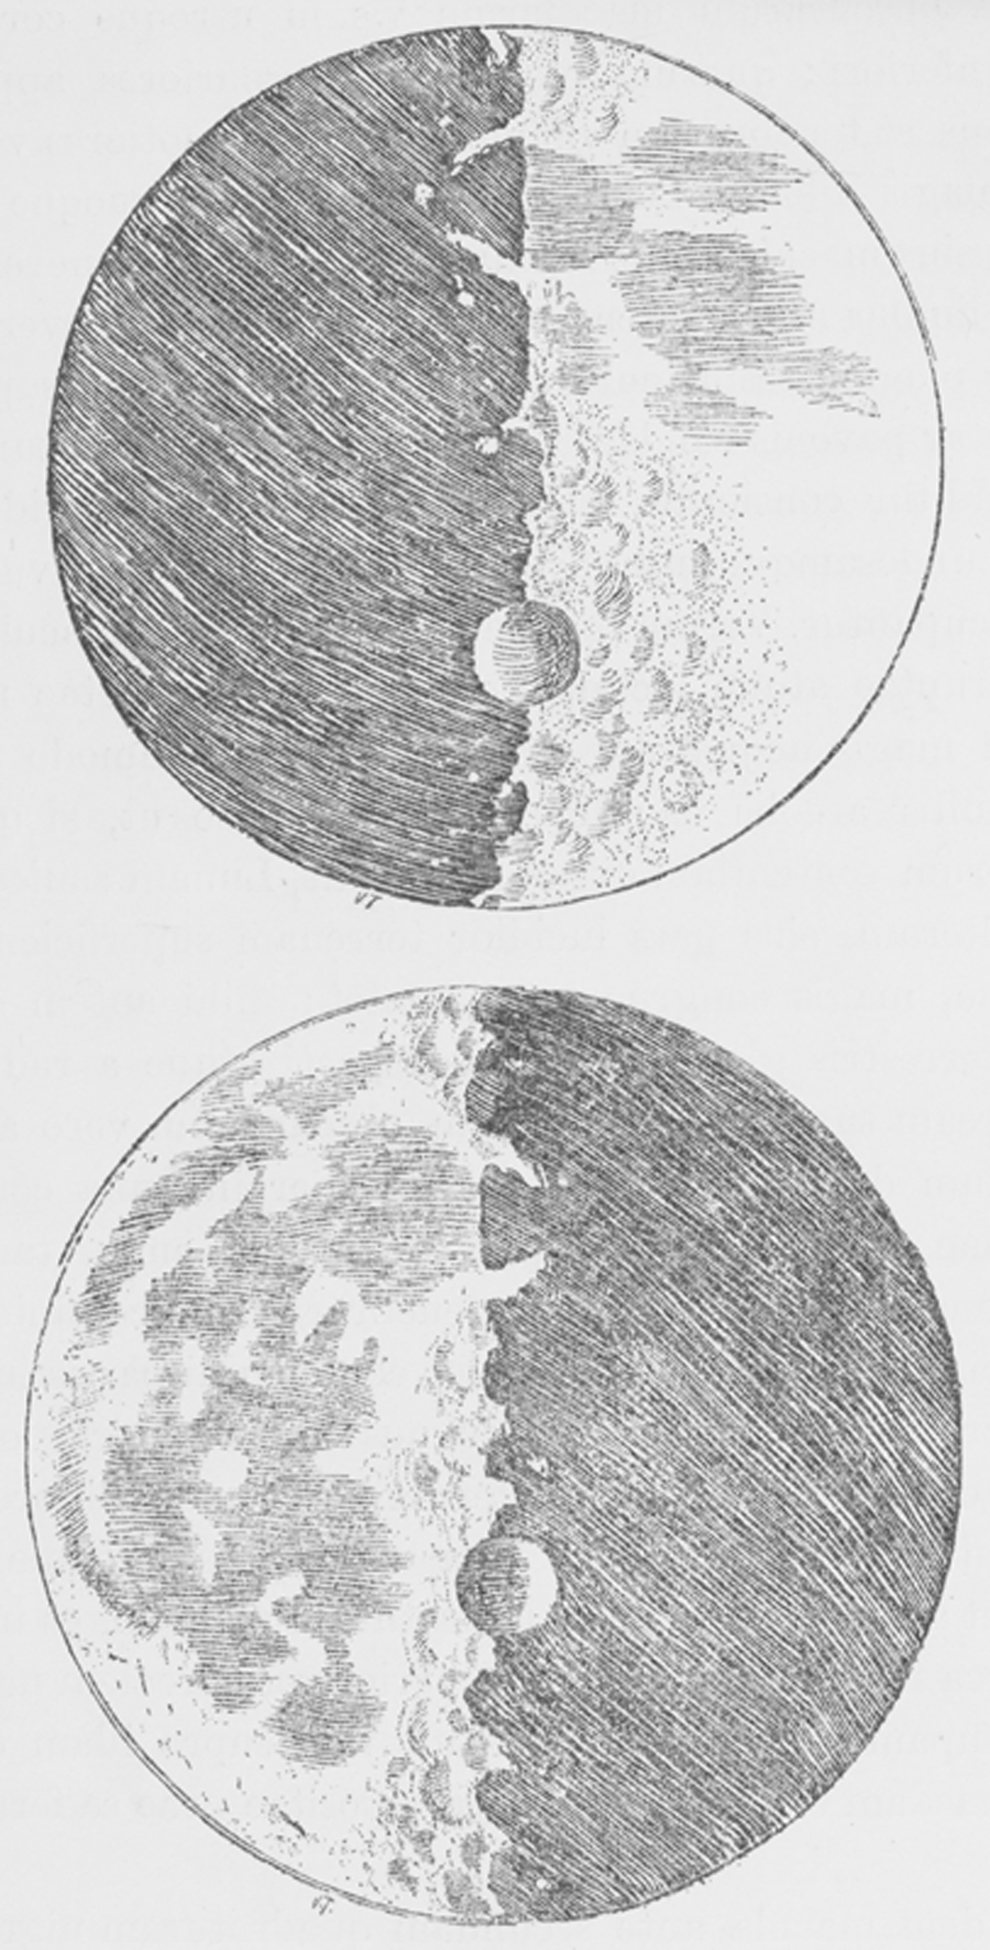 Tuschbild des Mondes von Galileo